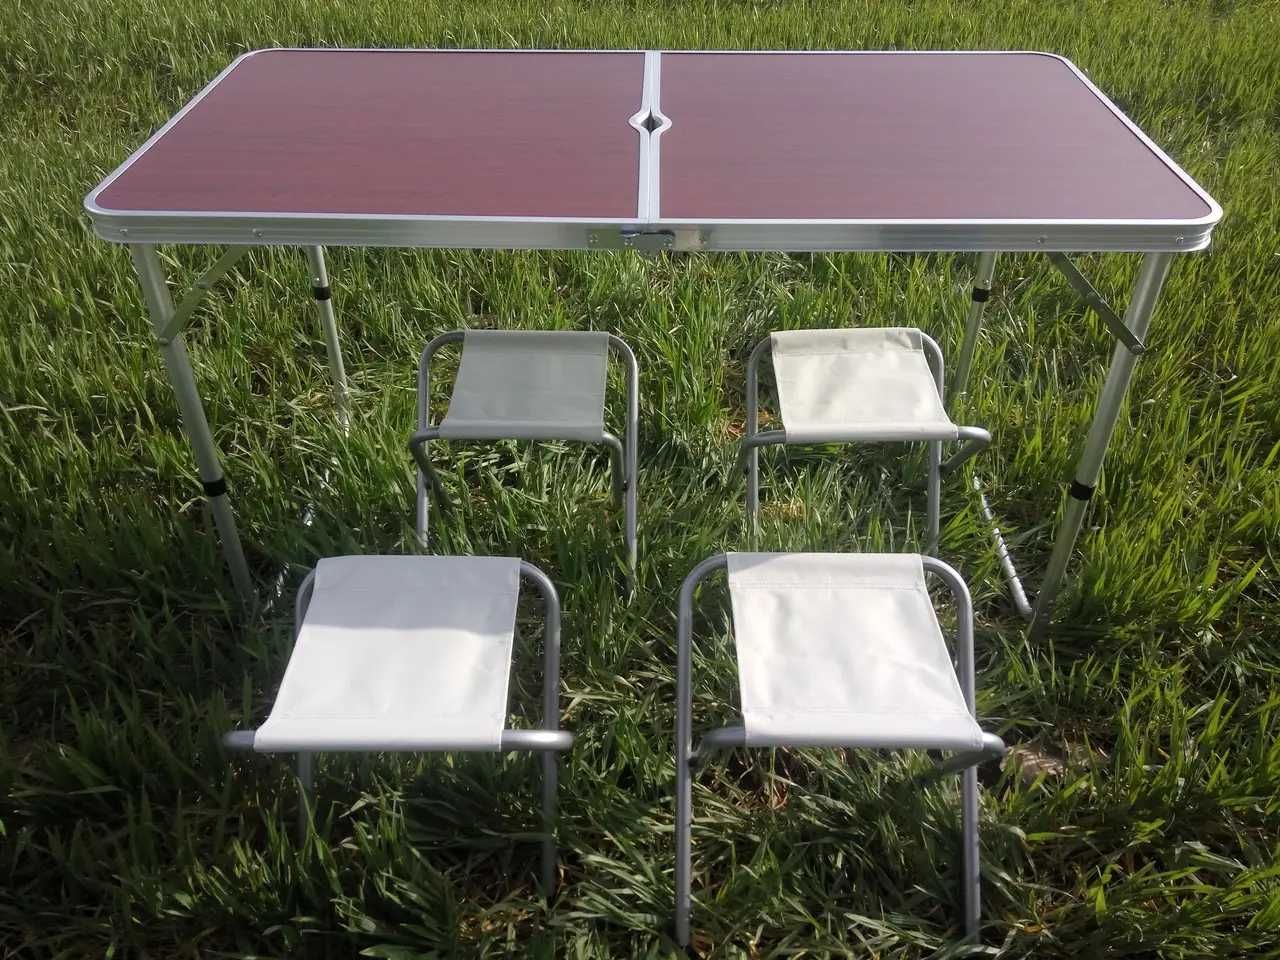 Стол алюминиевый раскладной для пикника + 4 стула, чемодан Красный